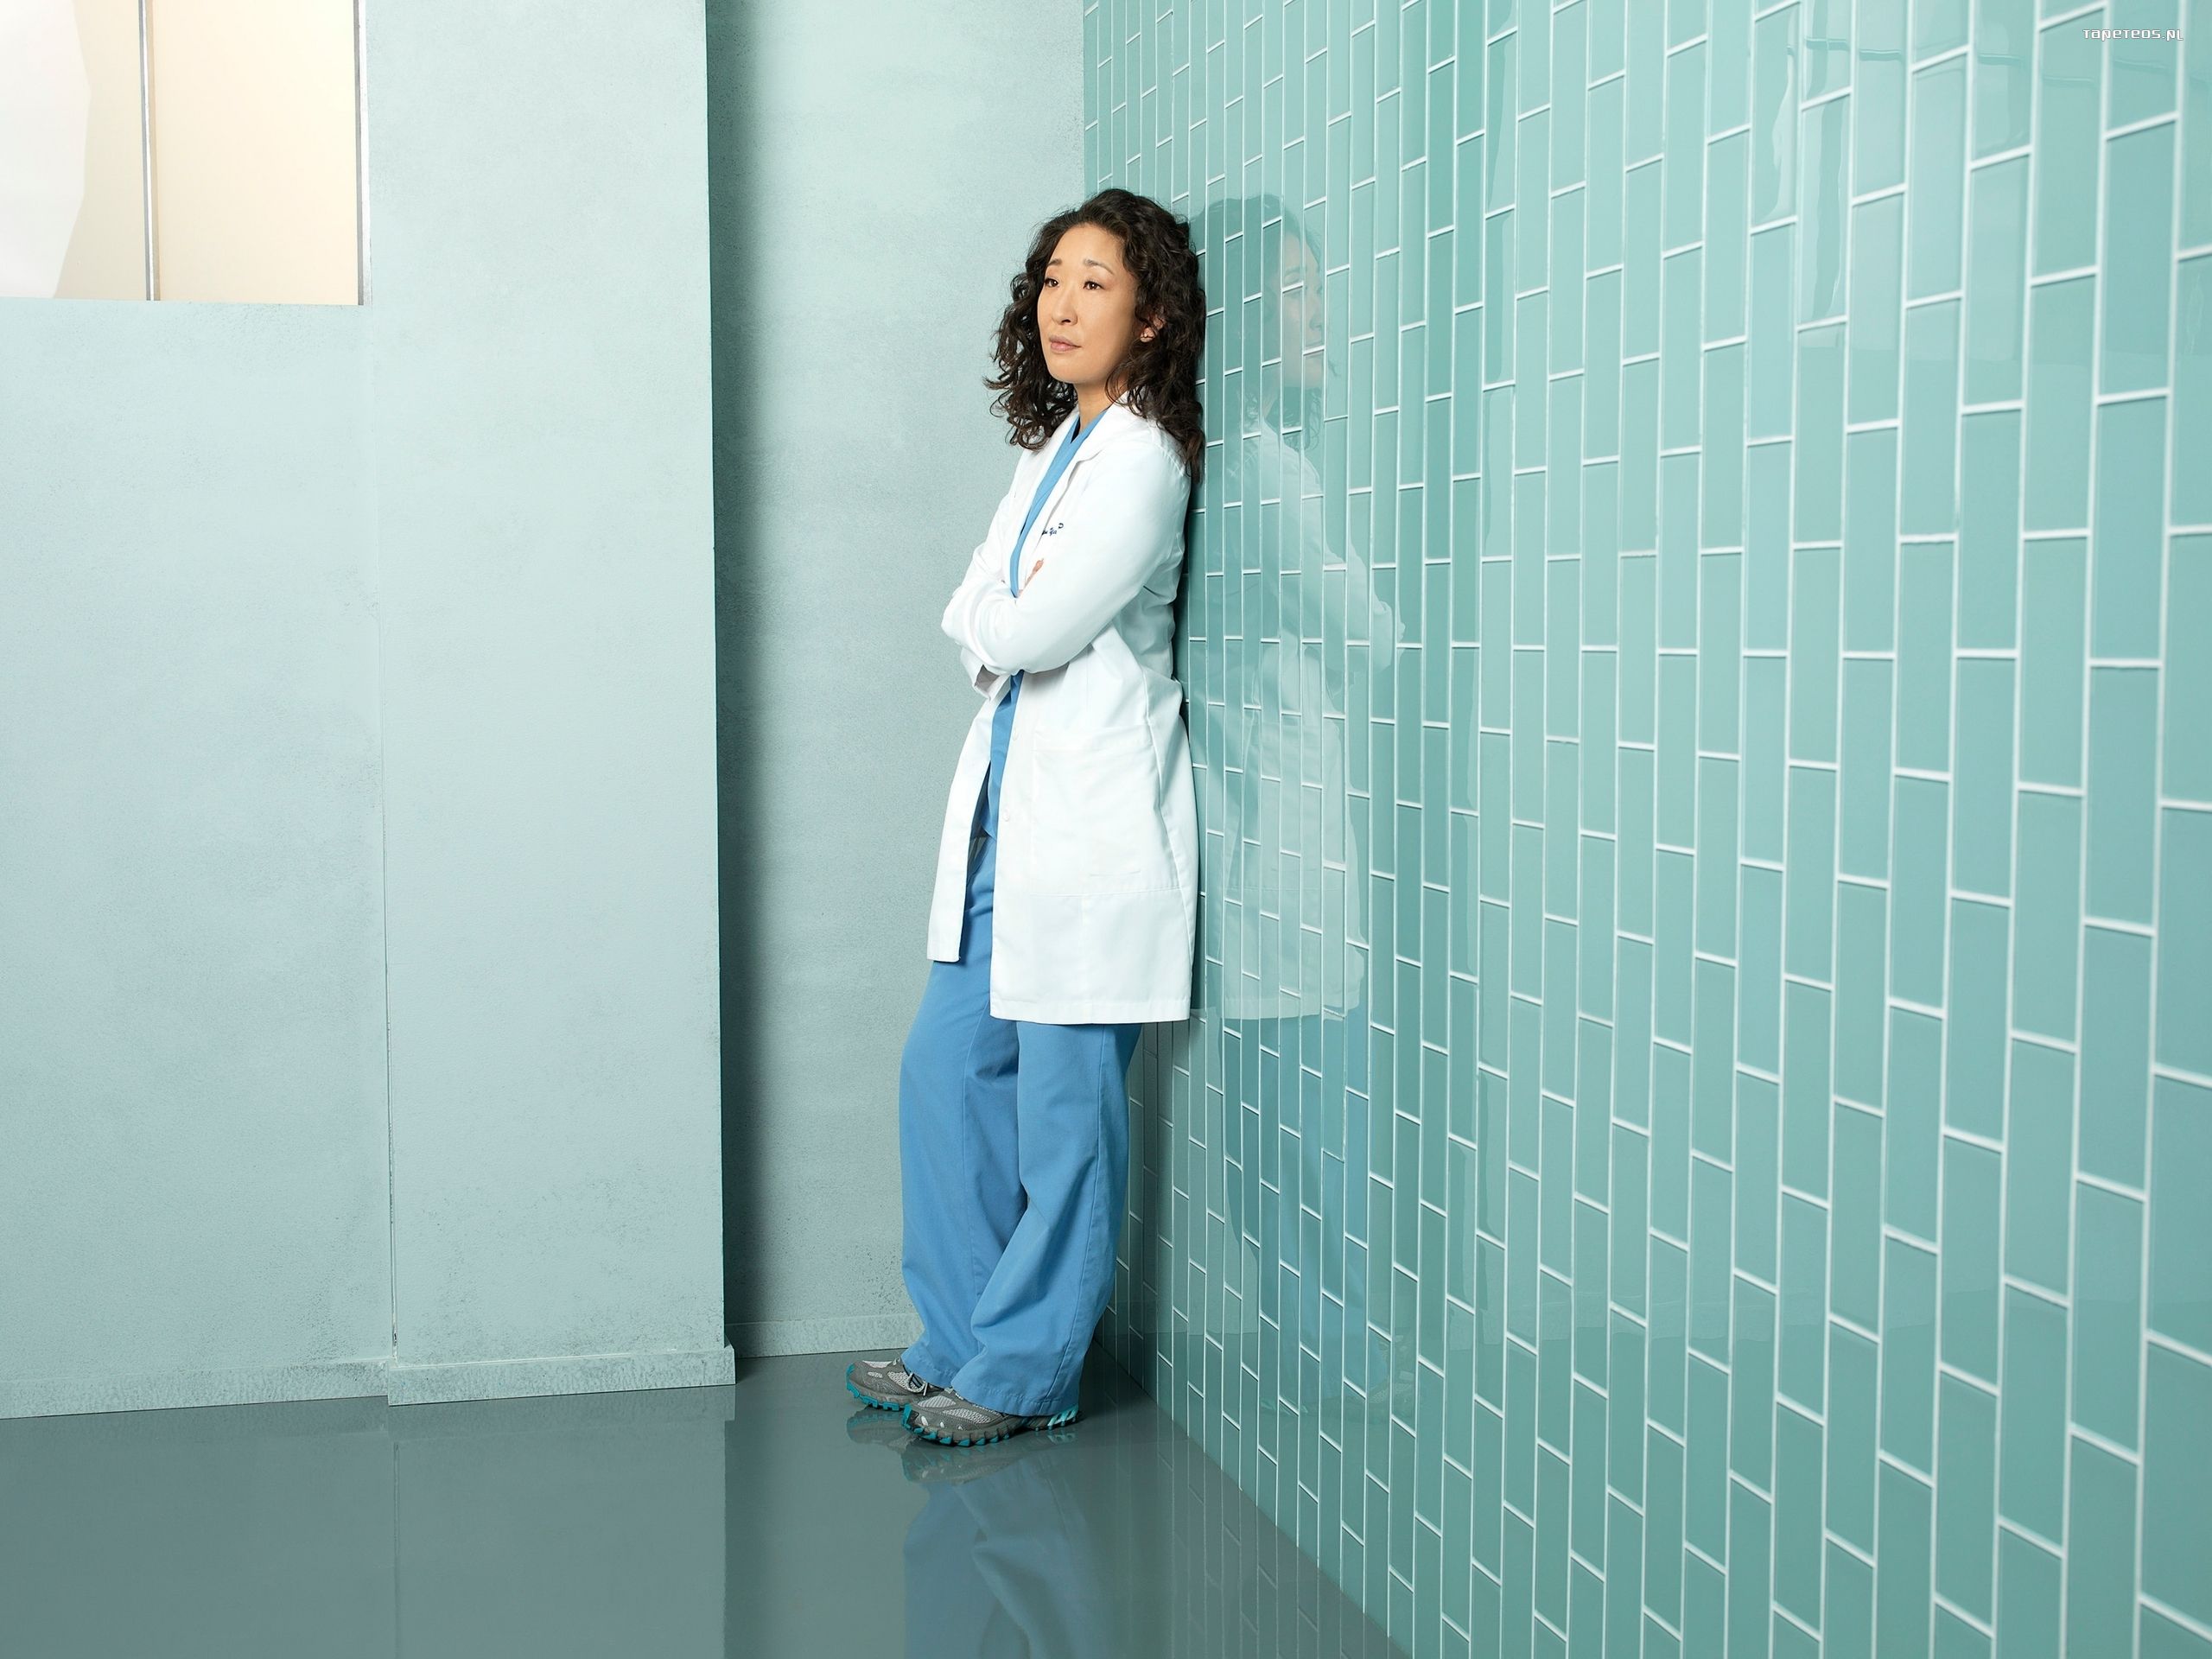 Chirurdzy, Greys Anatomy 041 Sandra Oh